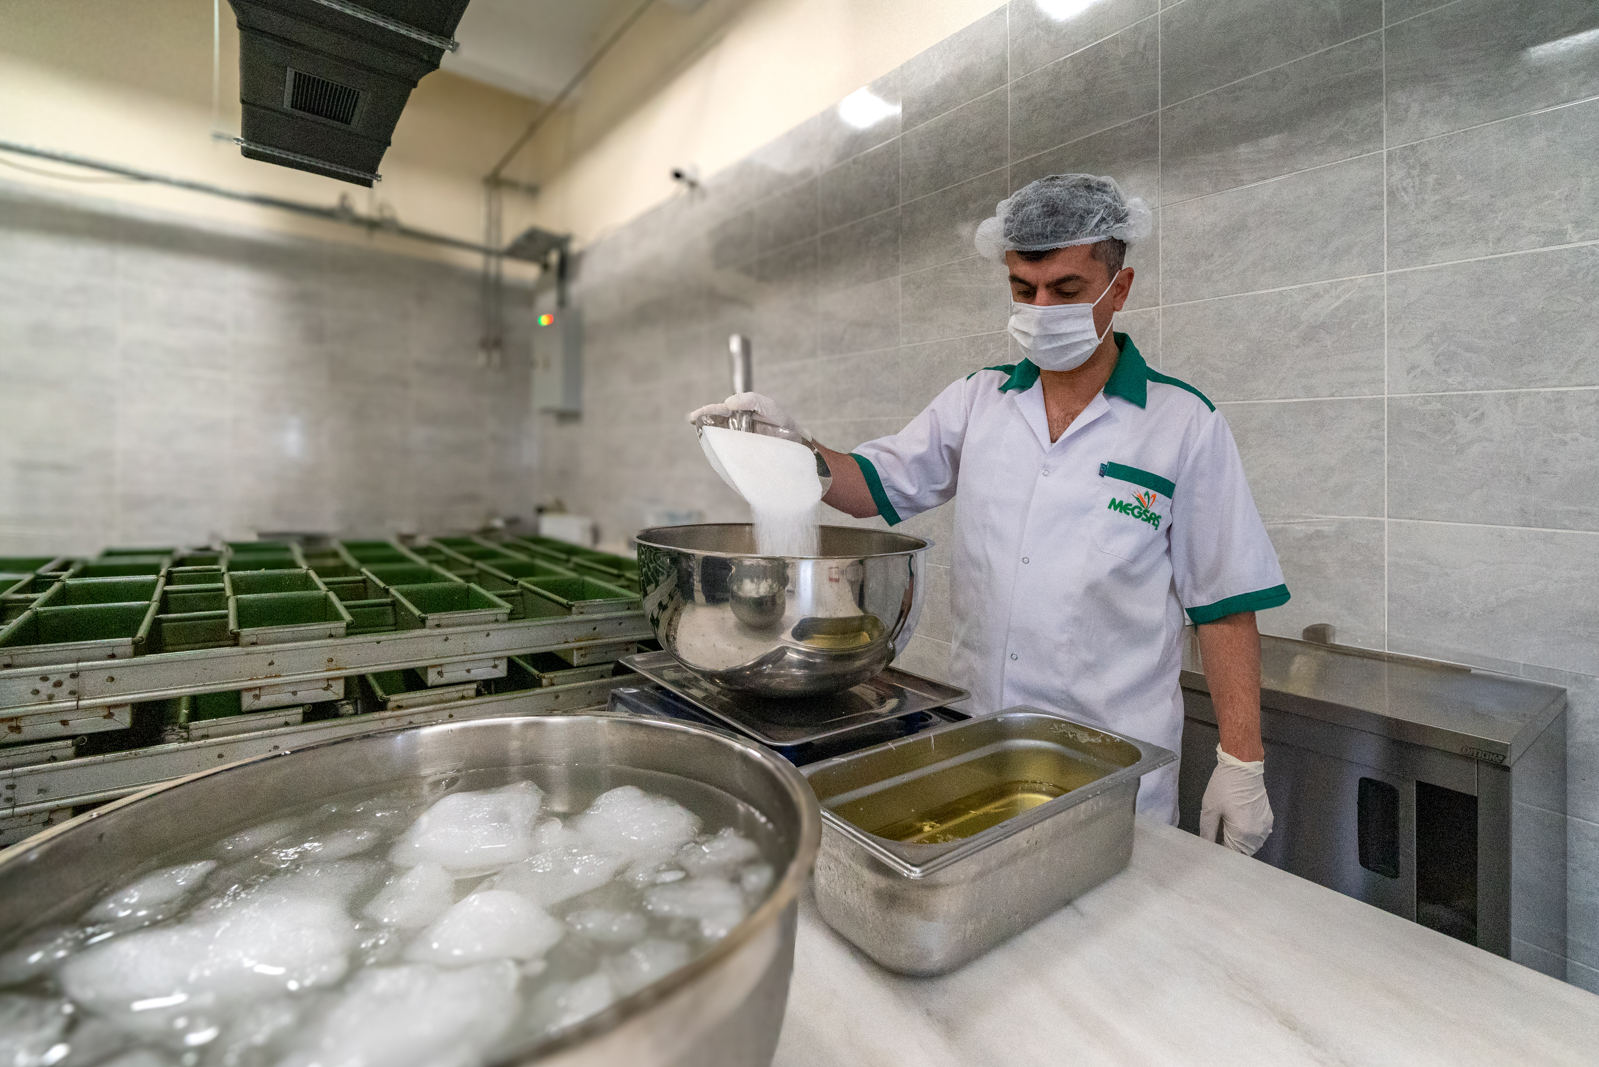 Malatya’da çölyak hastaları için glütensiz ekmek üretimine devam ediliyor